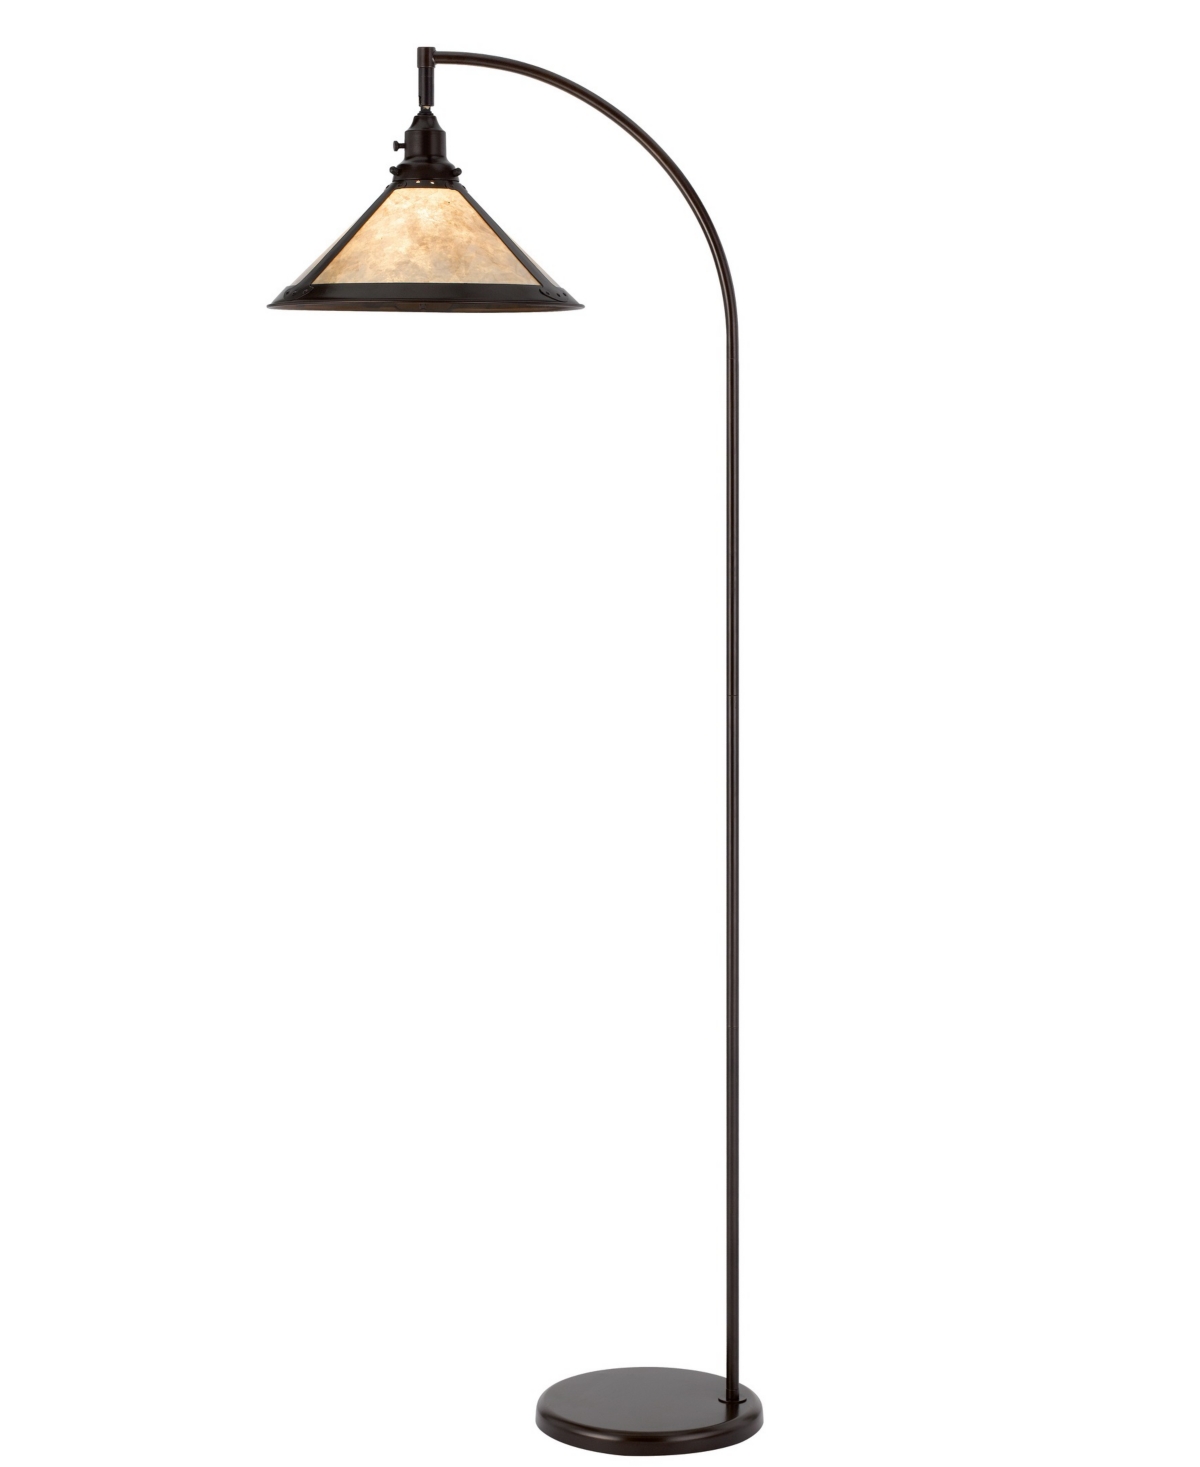 Cal Lighting Downbridge 65" Height Metal Arc Floor Lamp With Shade In Mica,dark Bronze